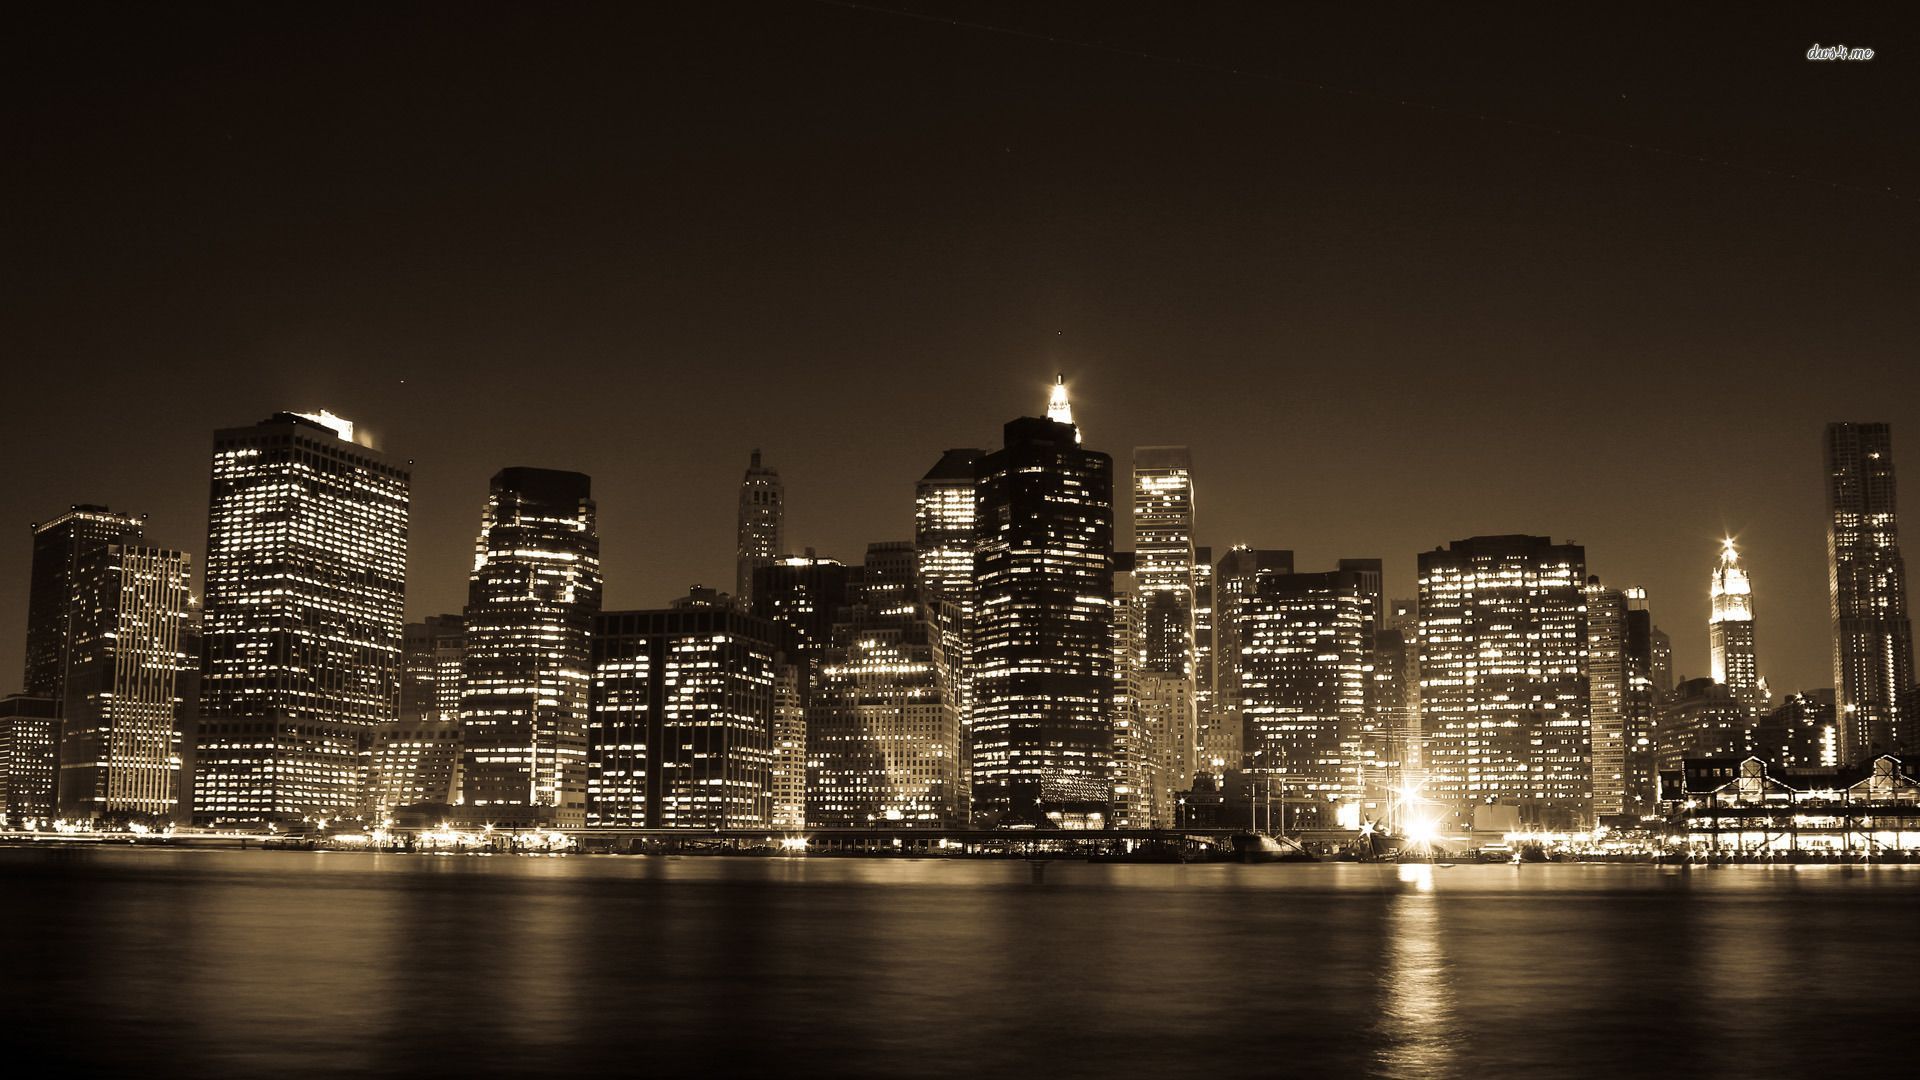 Desktop Backgrounds City Lights | Desktop Image